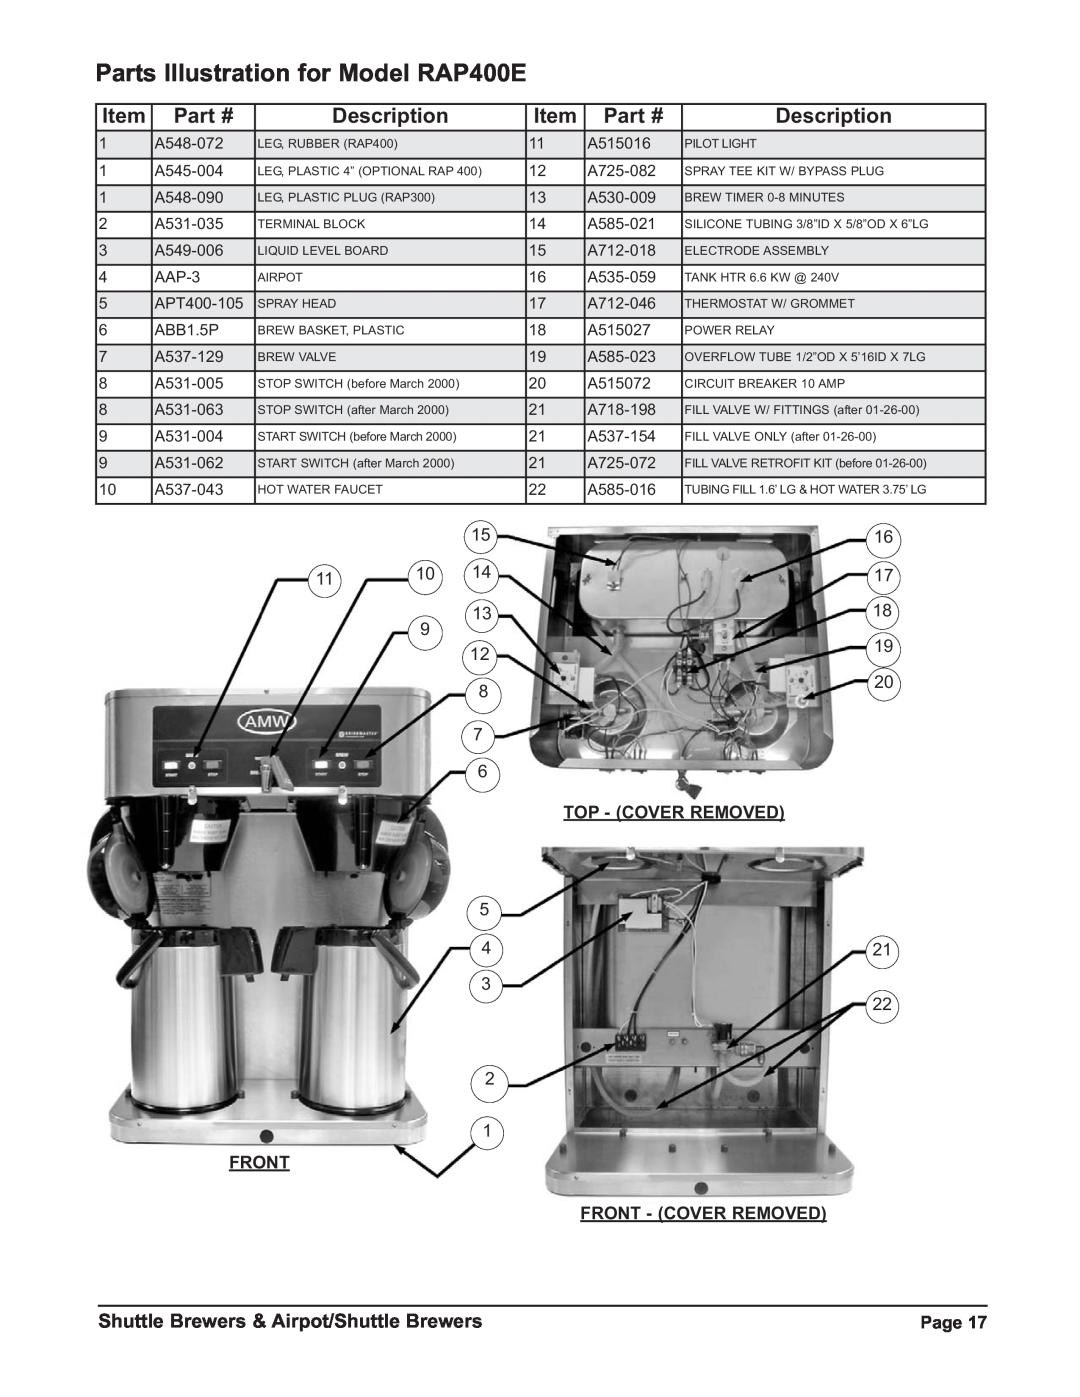 Grindmaster P400ESHP Parts Illustration for Model RAP400E, Description, Shuttle Brewers & Airpot/Shuttle Brewers 